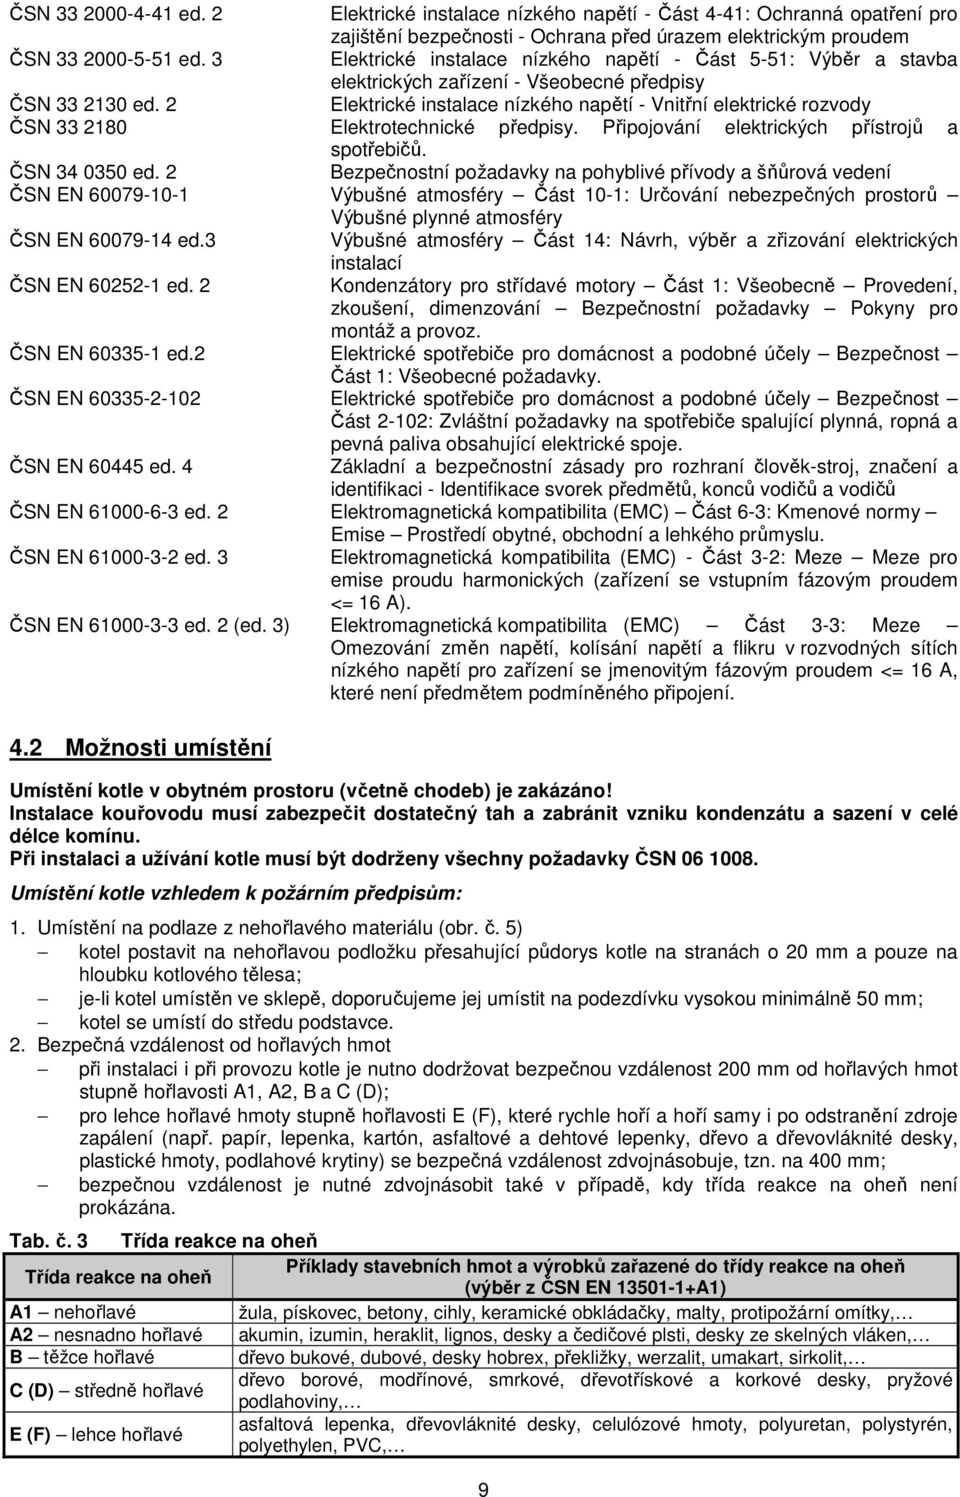 2 Elektrické instalace nízkého napětí - Vnitřní elektrické rozvody ČSN 33 2180 Elektrotechnické předpisy. Připojování elektrických přístrojů a spotřebičů. ČSN 34 0350 ed.